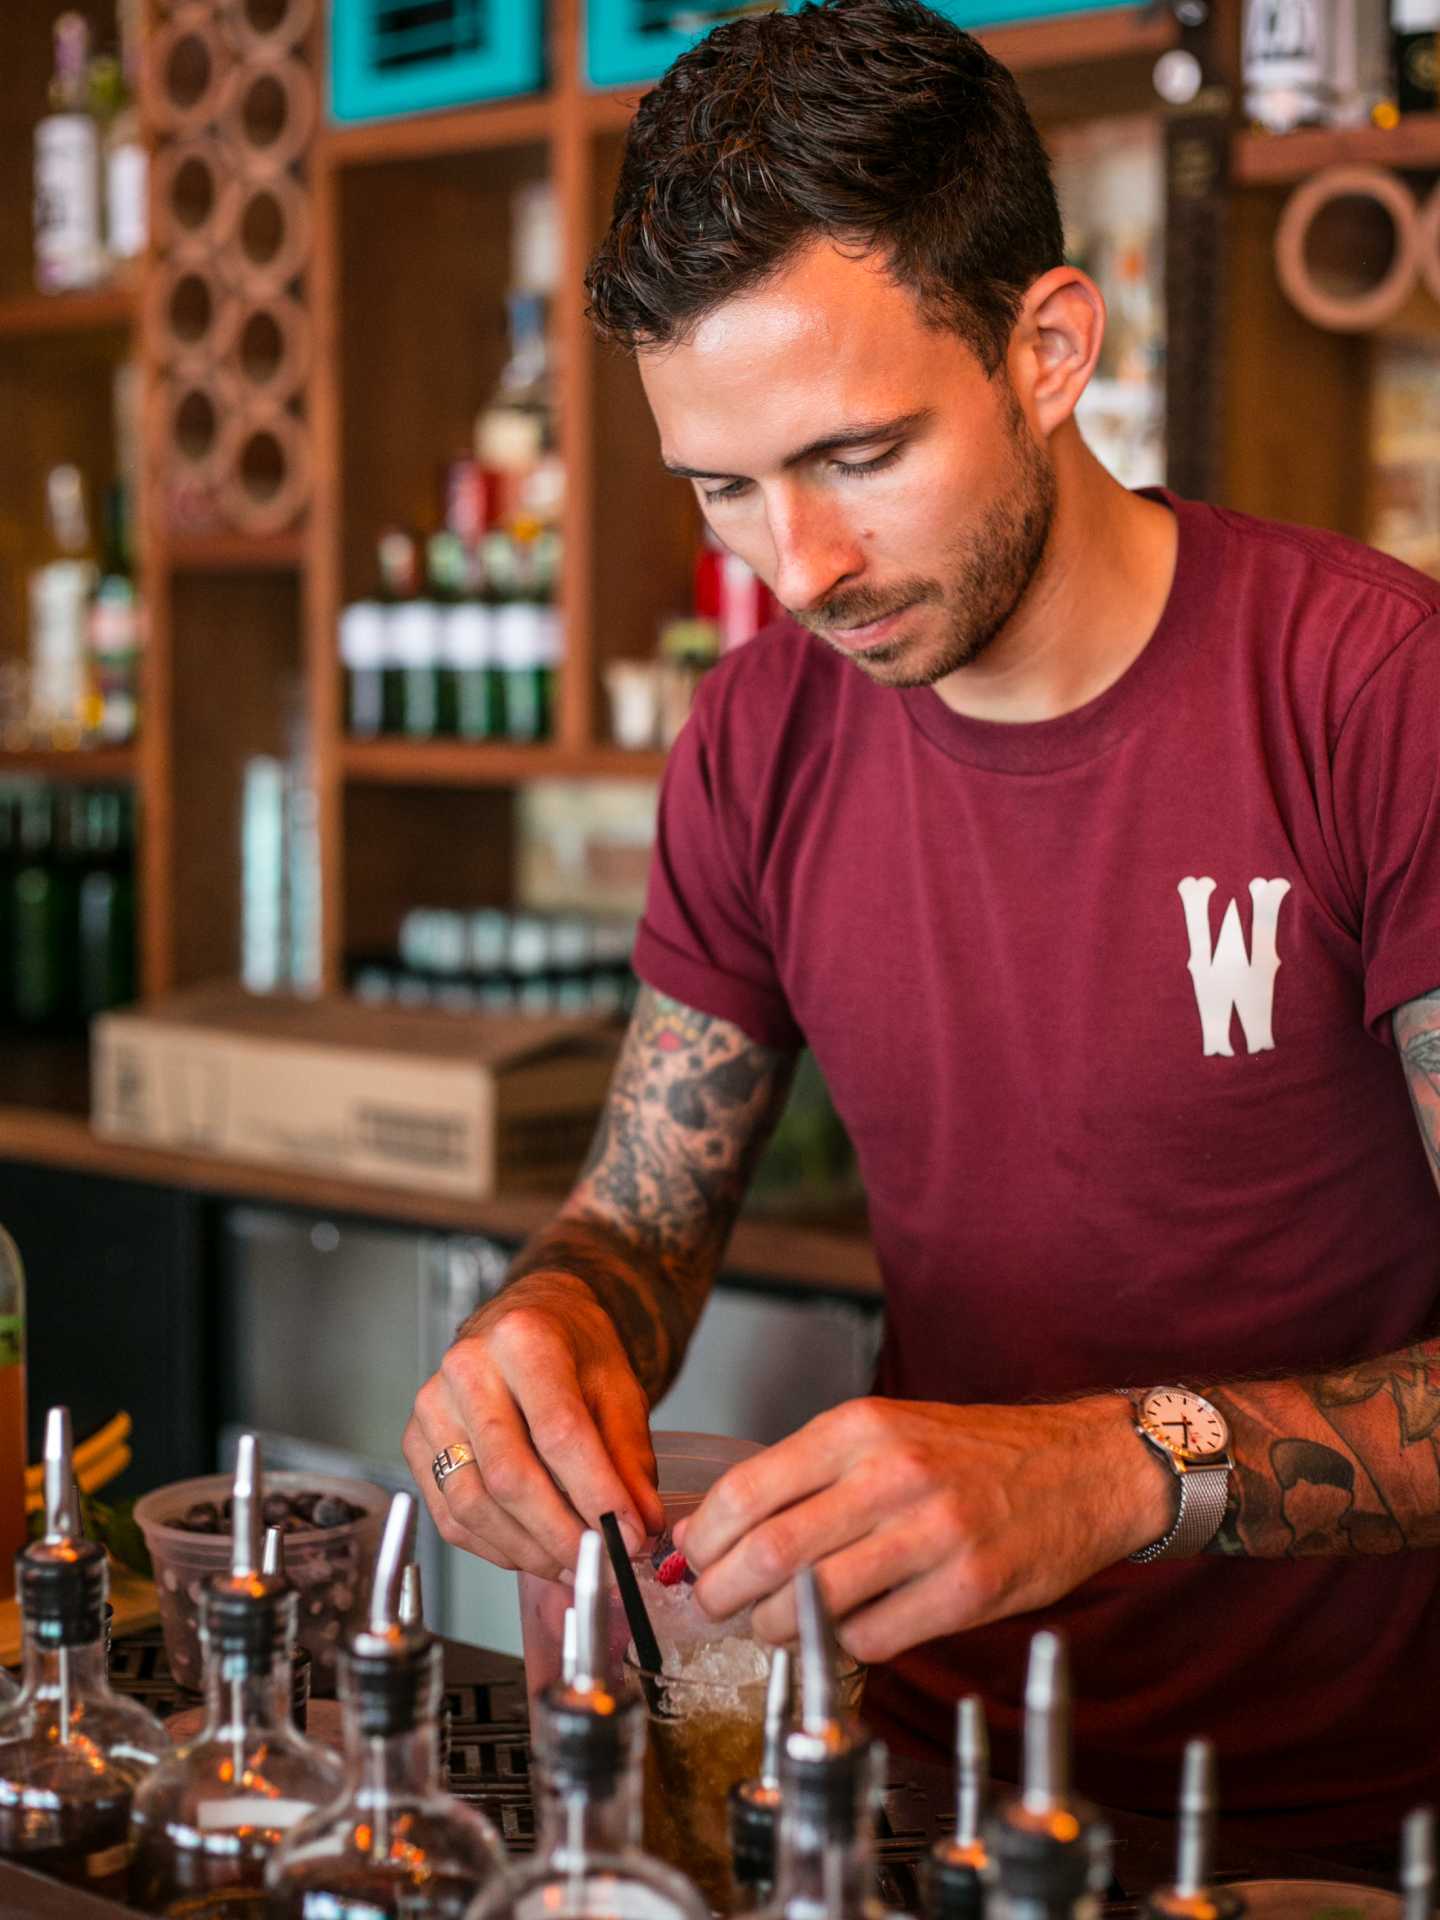 Tequila and mezcal | Owen Walker preparing a drink at El Rey Mezcal bar